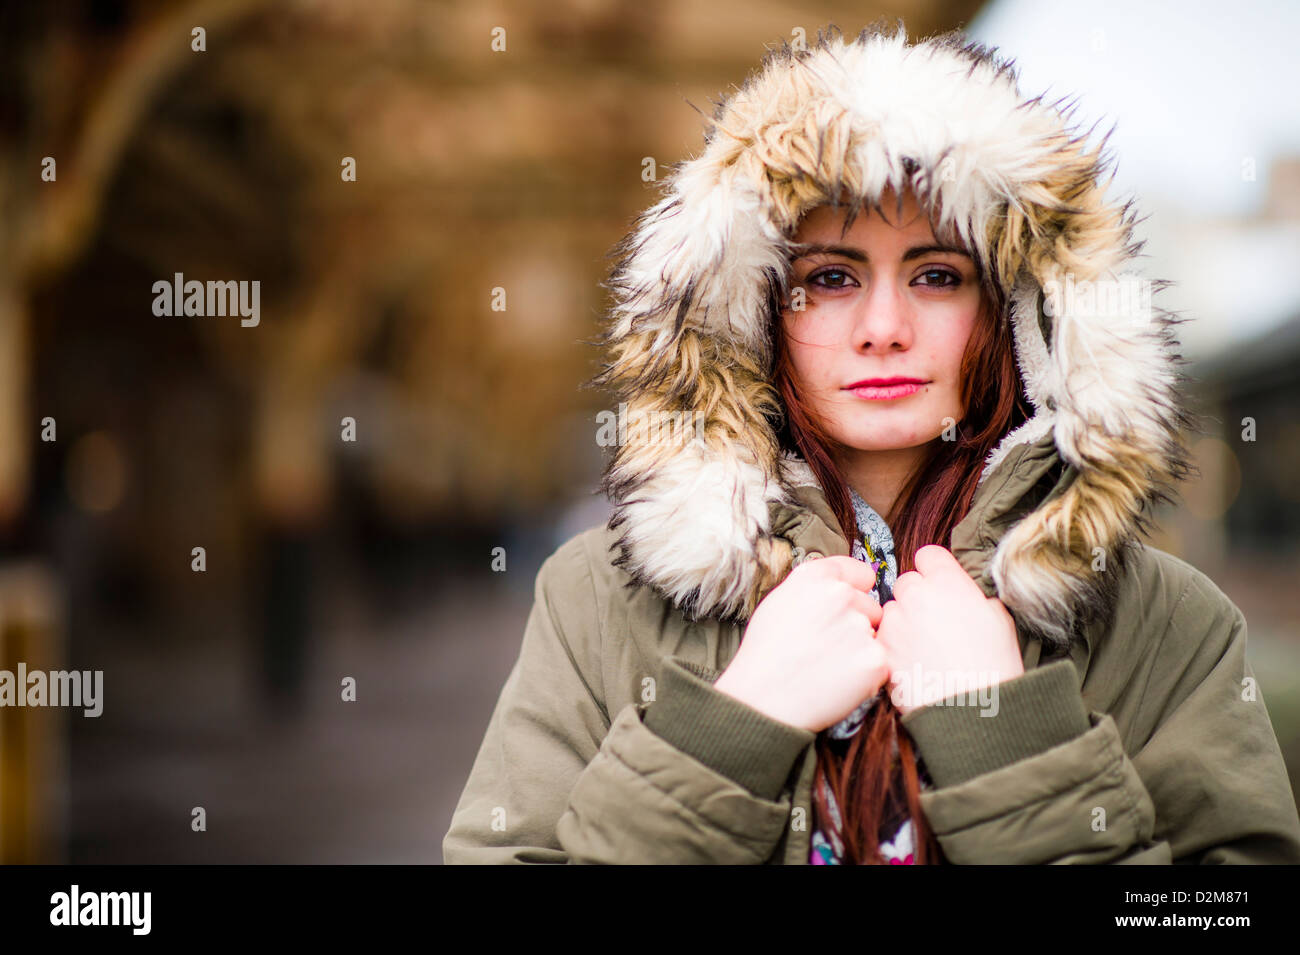 Eine neunzehnjährige Mädchen junge Frau gefüttert UK tragen Pelz Mantel mit  Kapuze Parka, Winter, im Freien, Kälte Stockfotografie - Alamy